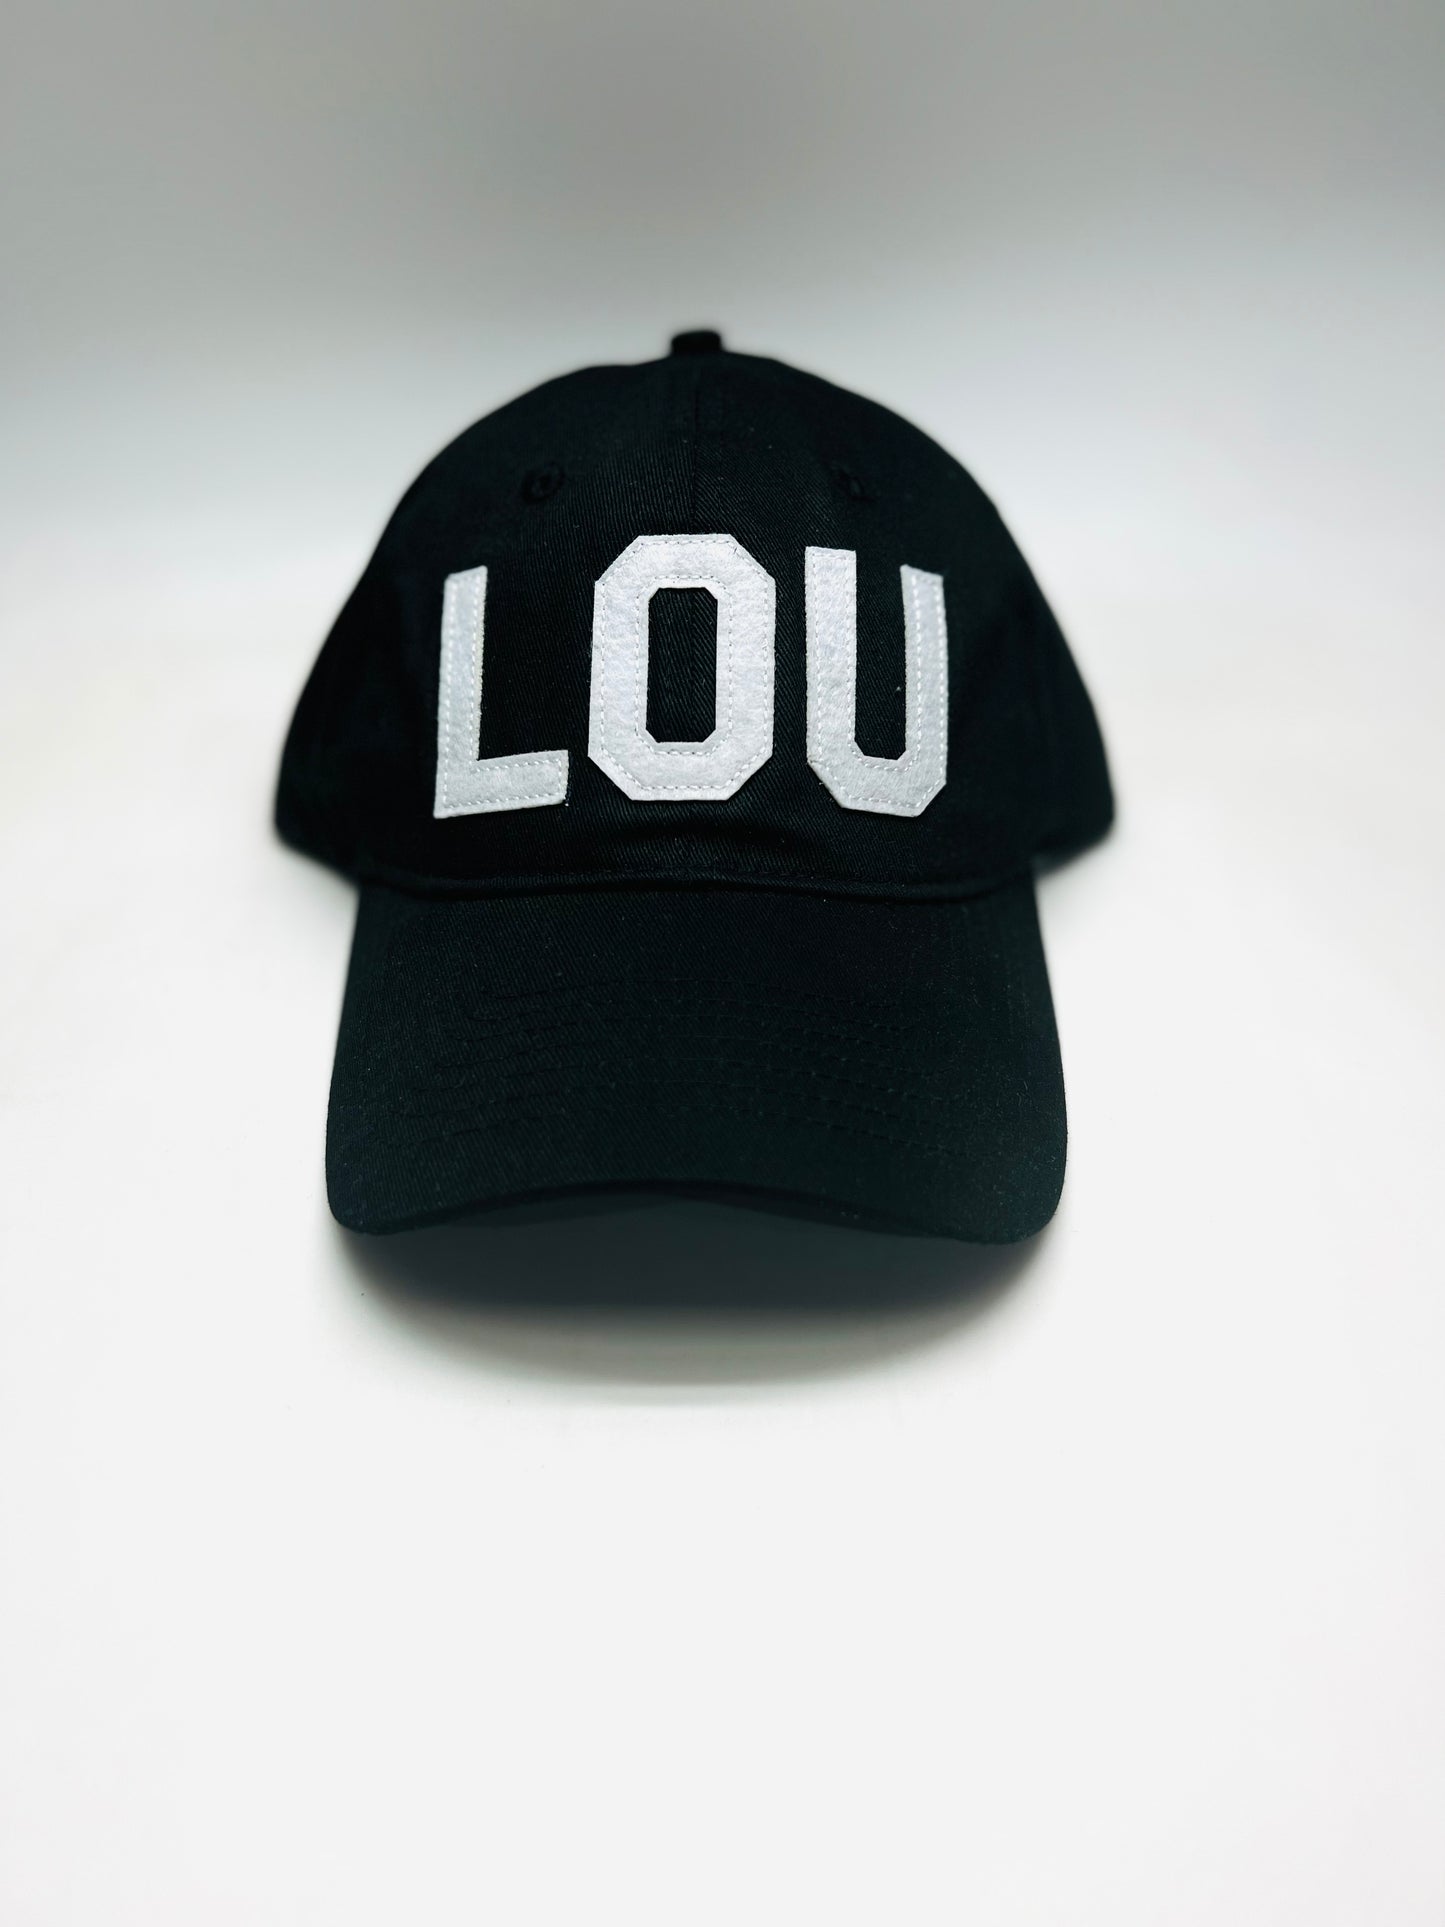 Lou - Louisville, KY Hat Black